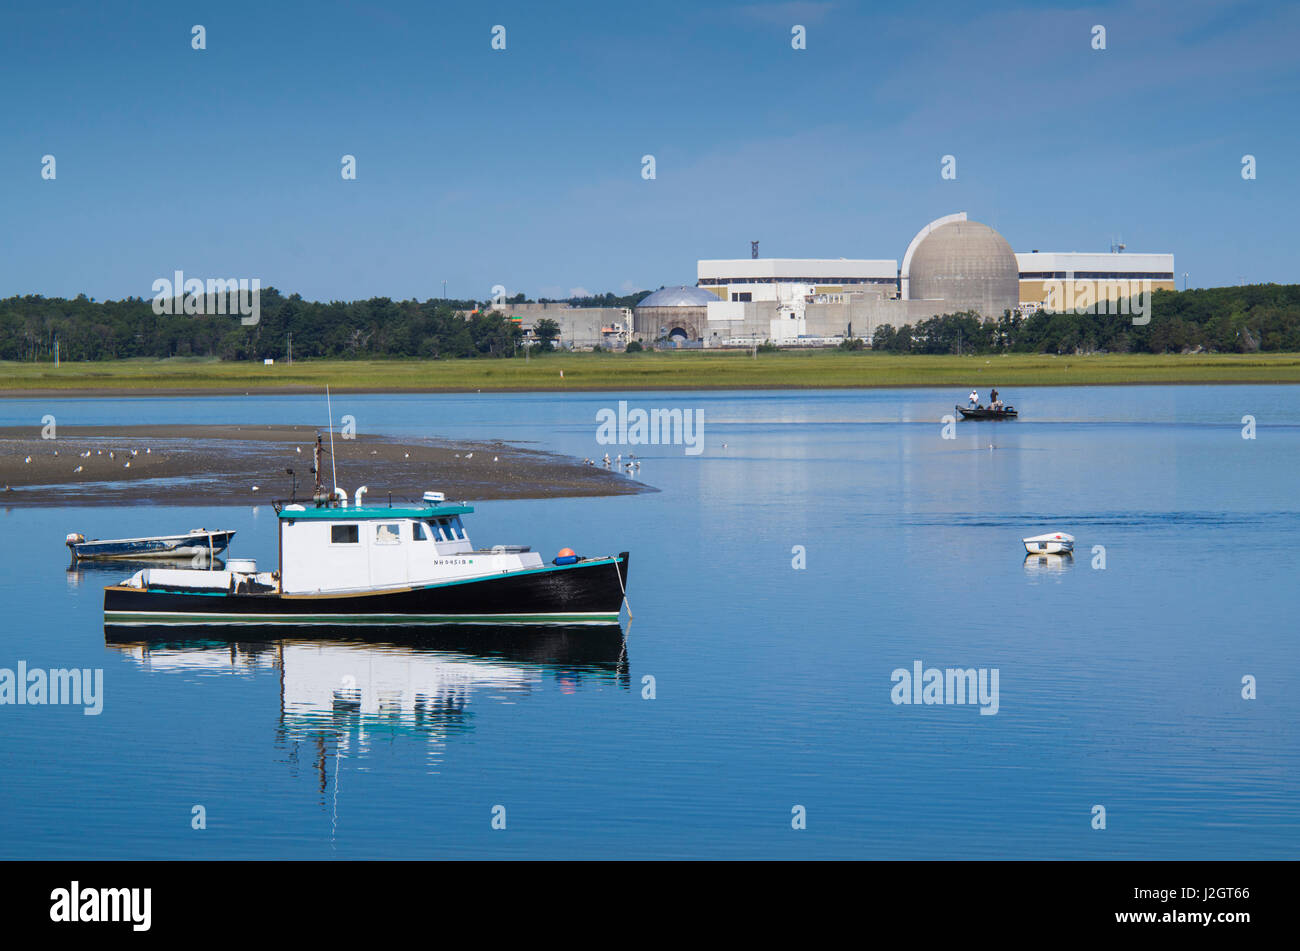 USA, New Hampshire, Seabrook, bateaux de pêche et de l'usine d'énergie nucléaire Seabrook Banque D'Images